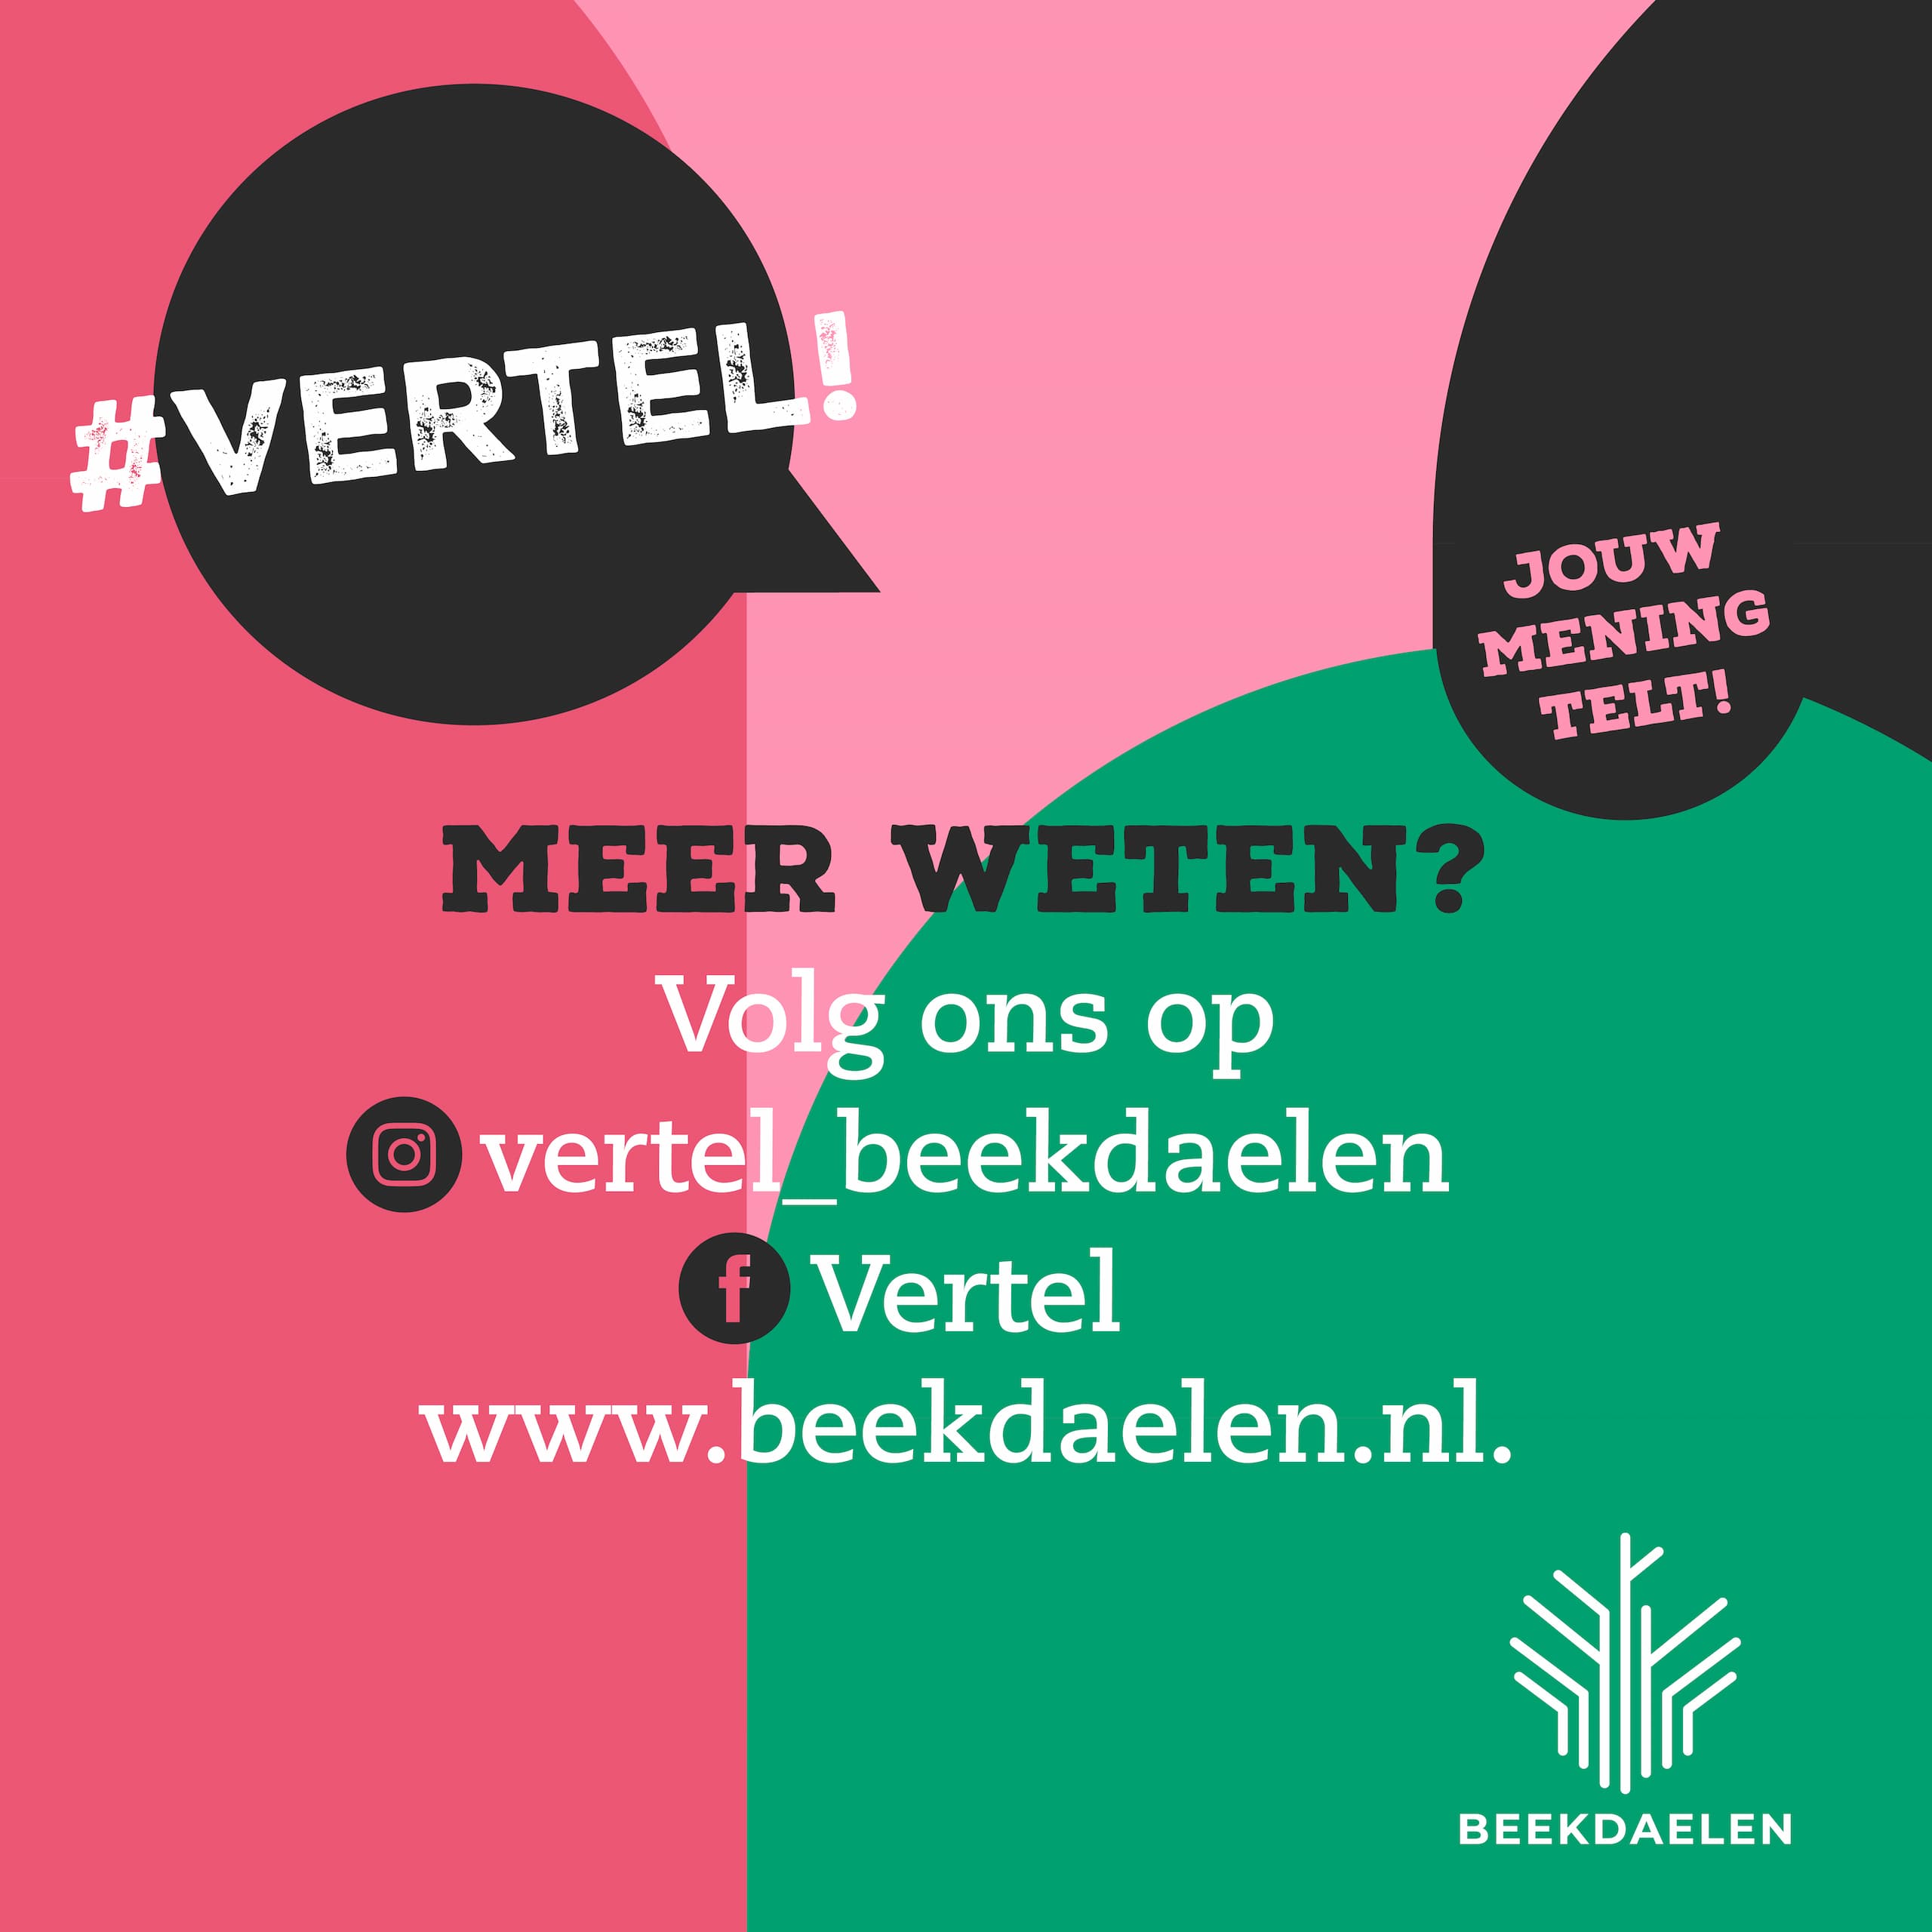 #vertel! Jouw mening telt! Meer weten? Volg ons op insta vertel_beekdaelen, facebook Vertel en www.beekdaelen.nl